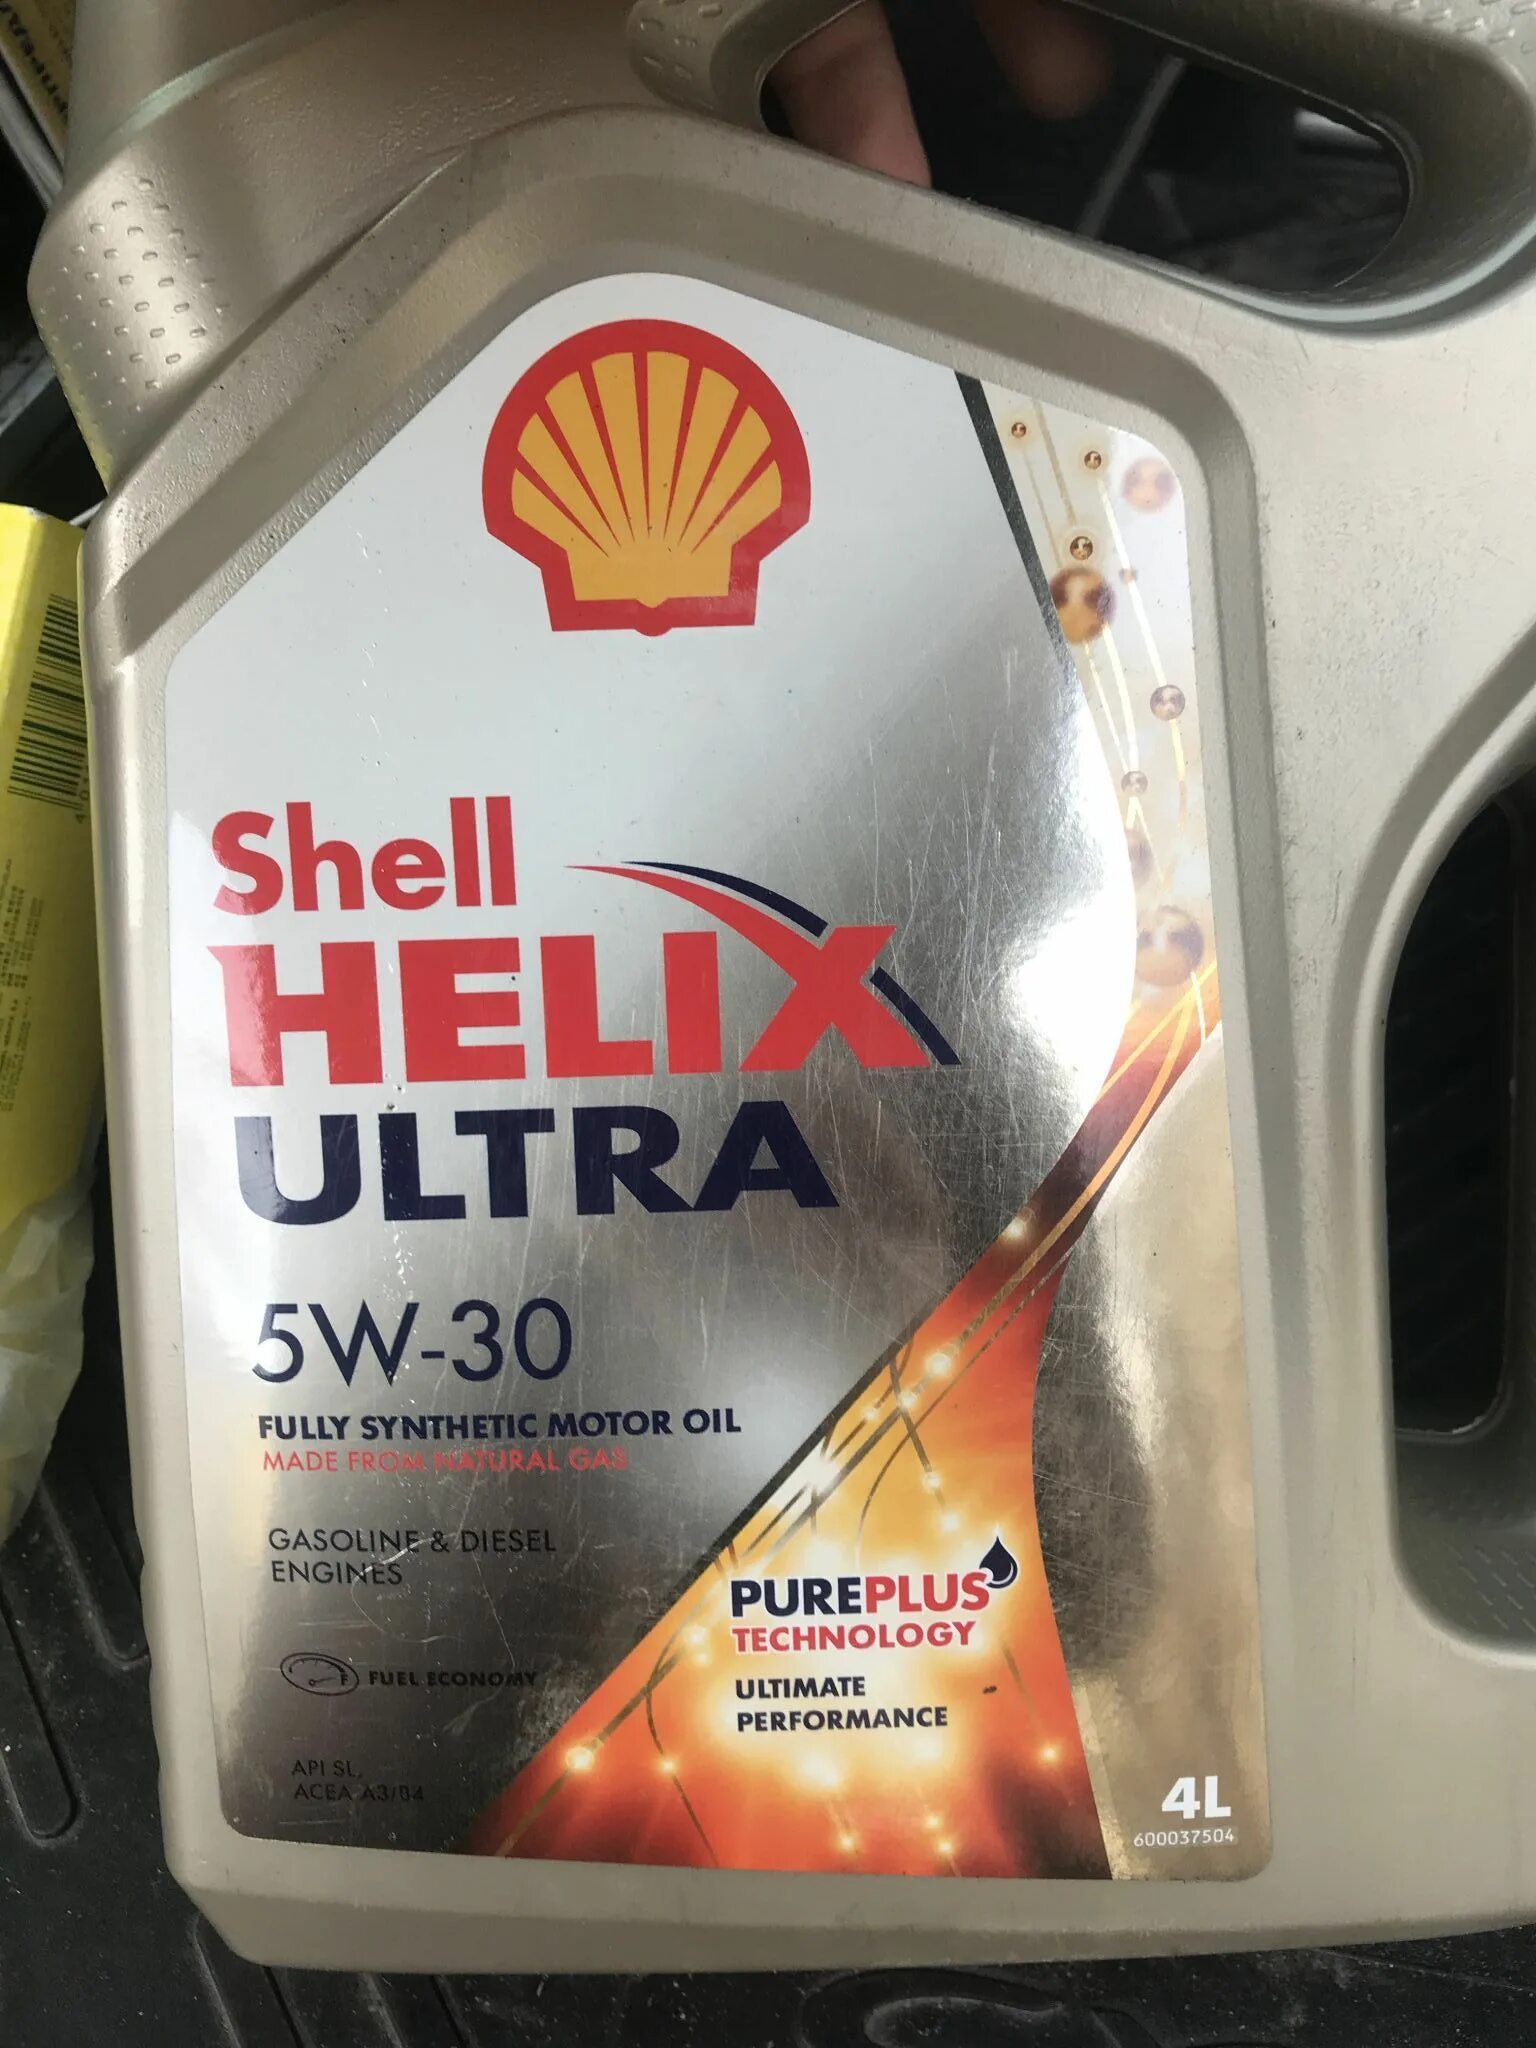 Shell 5w30 Хендай. Масло моторное Шелл Хеликс ультра 5w30. Shell Ultra 5w30 SL. Масло моторное 5w30 синтетика Шелл Хеликс. Полусинтетическое масло 5w30